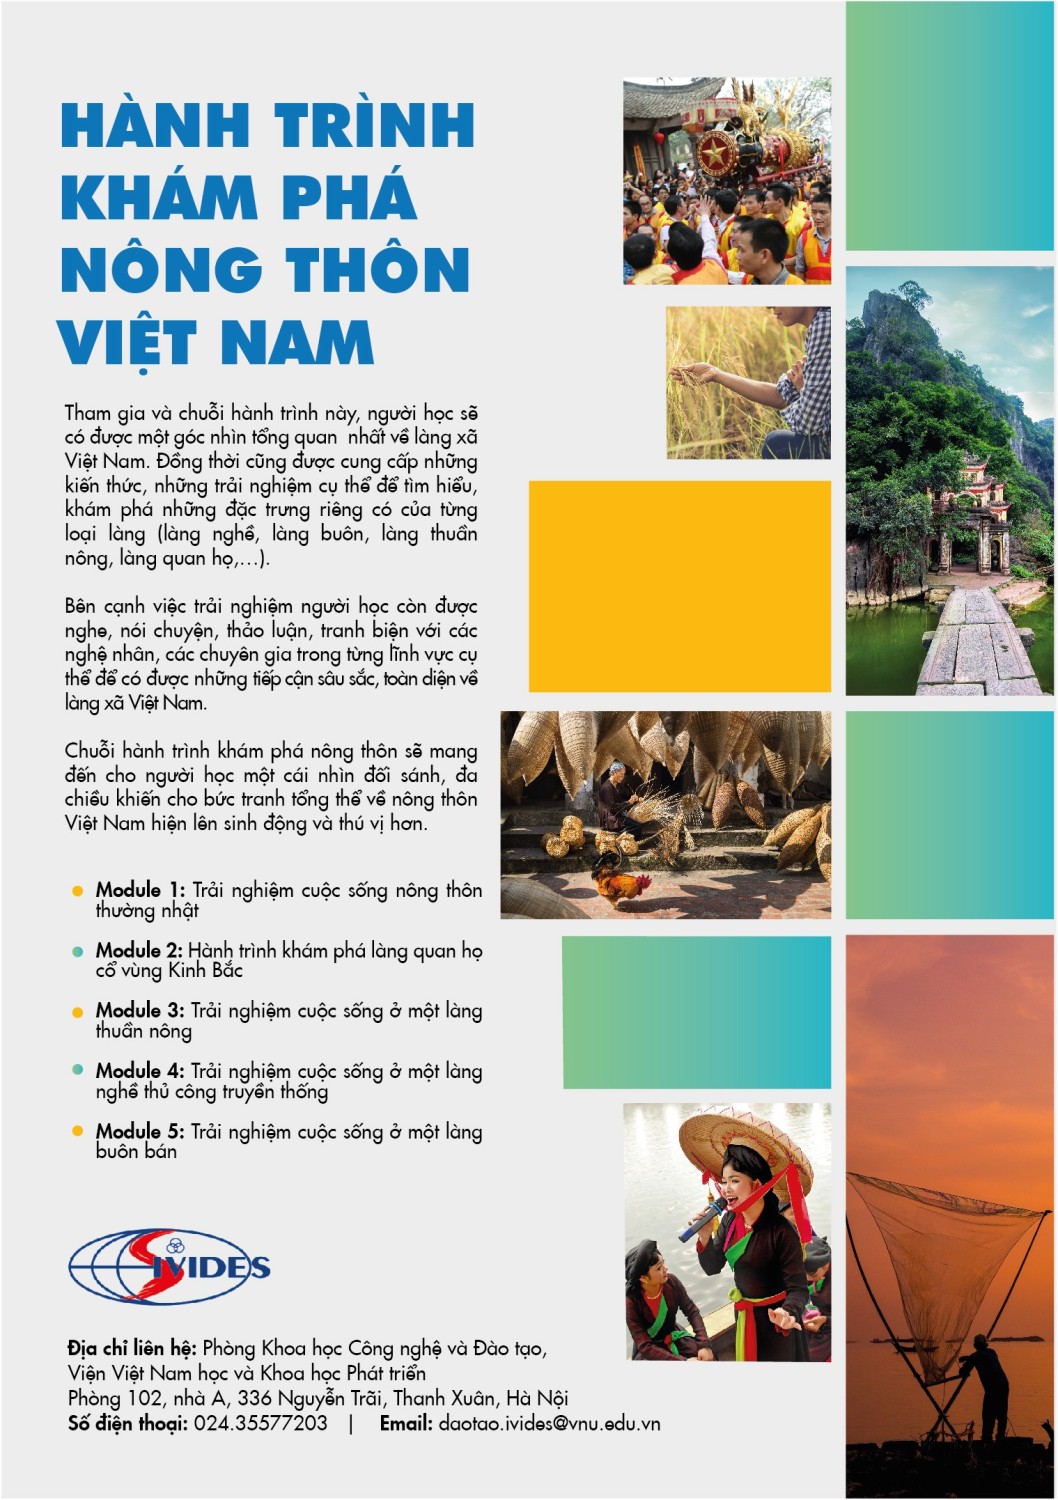 Hành trình khám phá Nông thôn Việt Nam